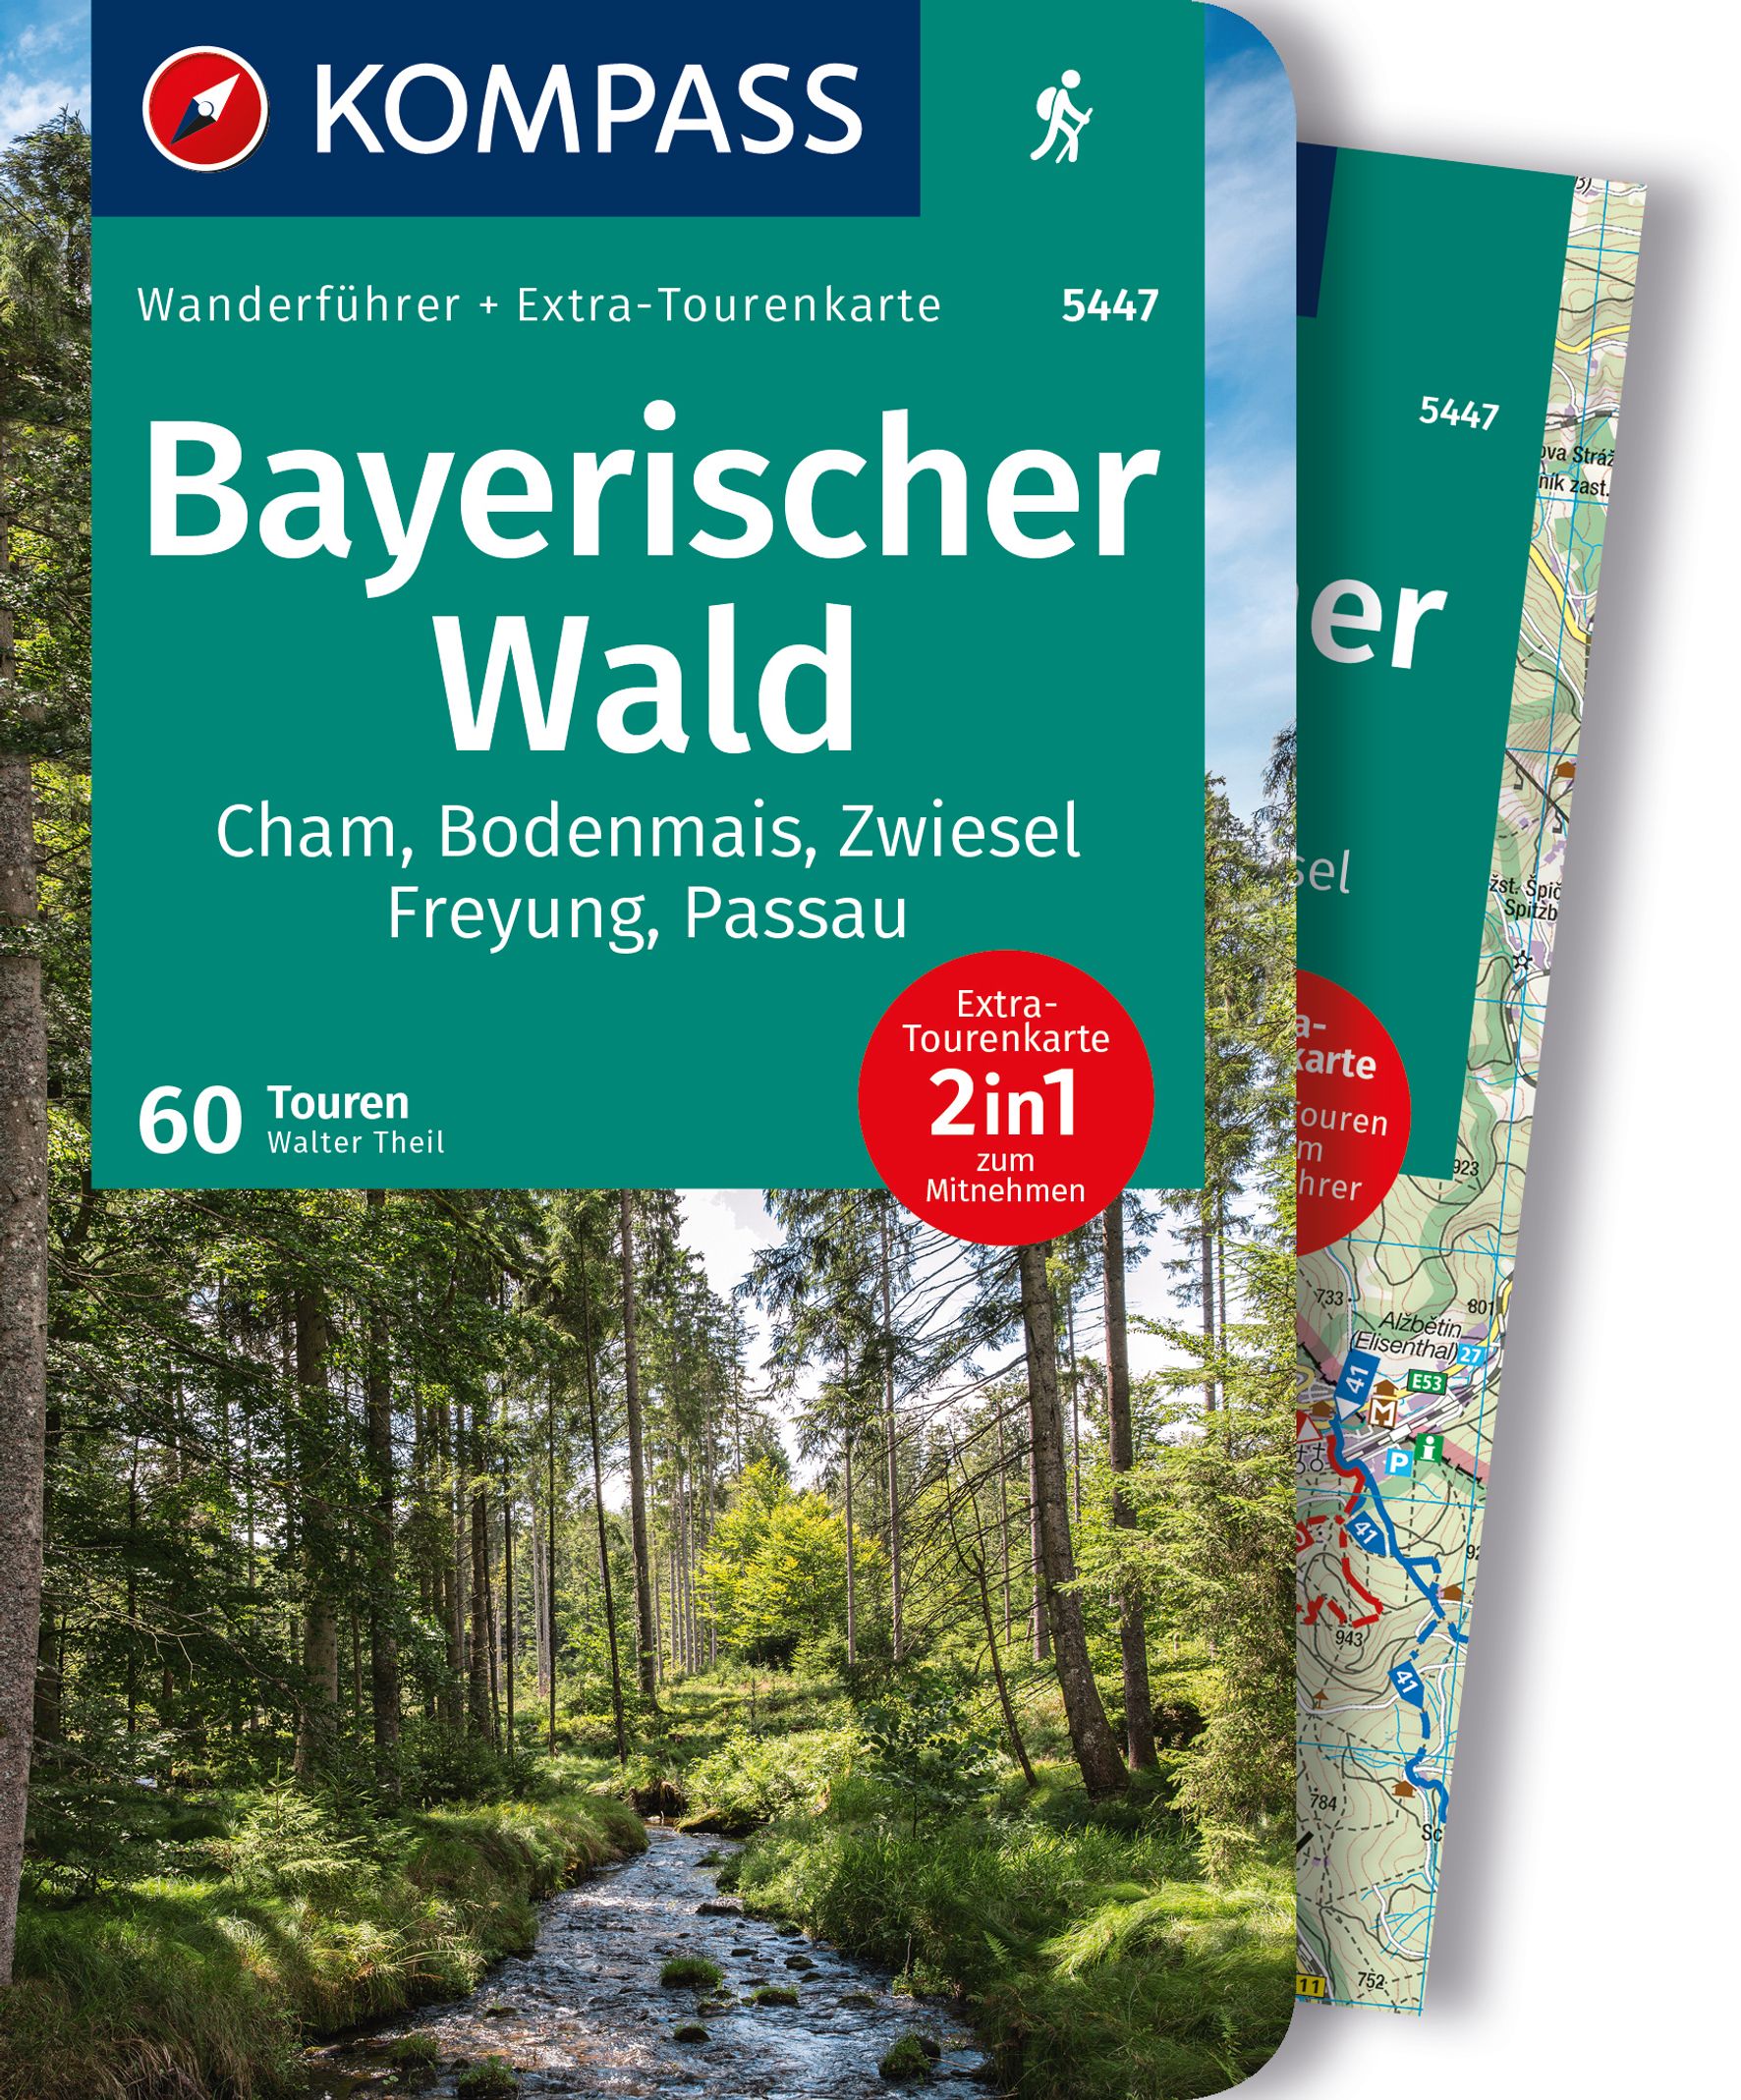 MAIRDUMONT Bayerischer Wald, Cham, Bodenmais, Zwiesel, Freyung, Passau, 60 Touren